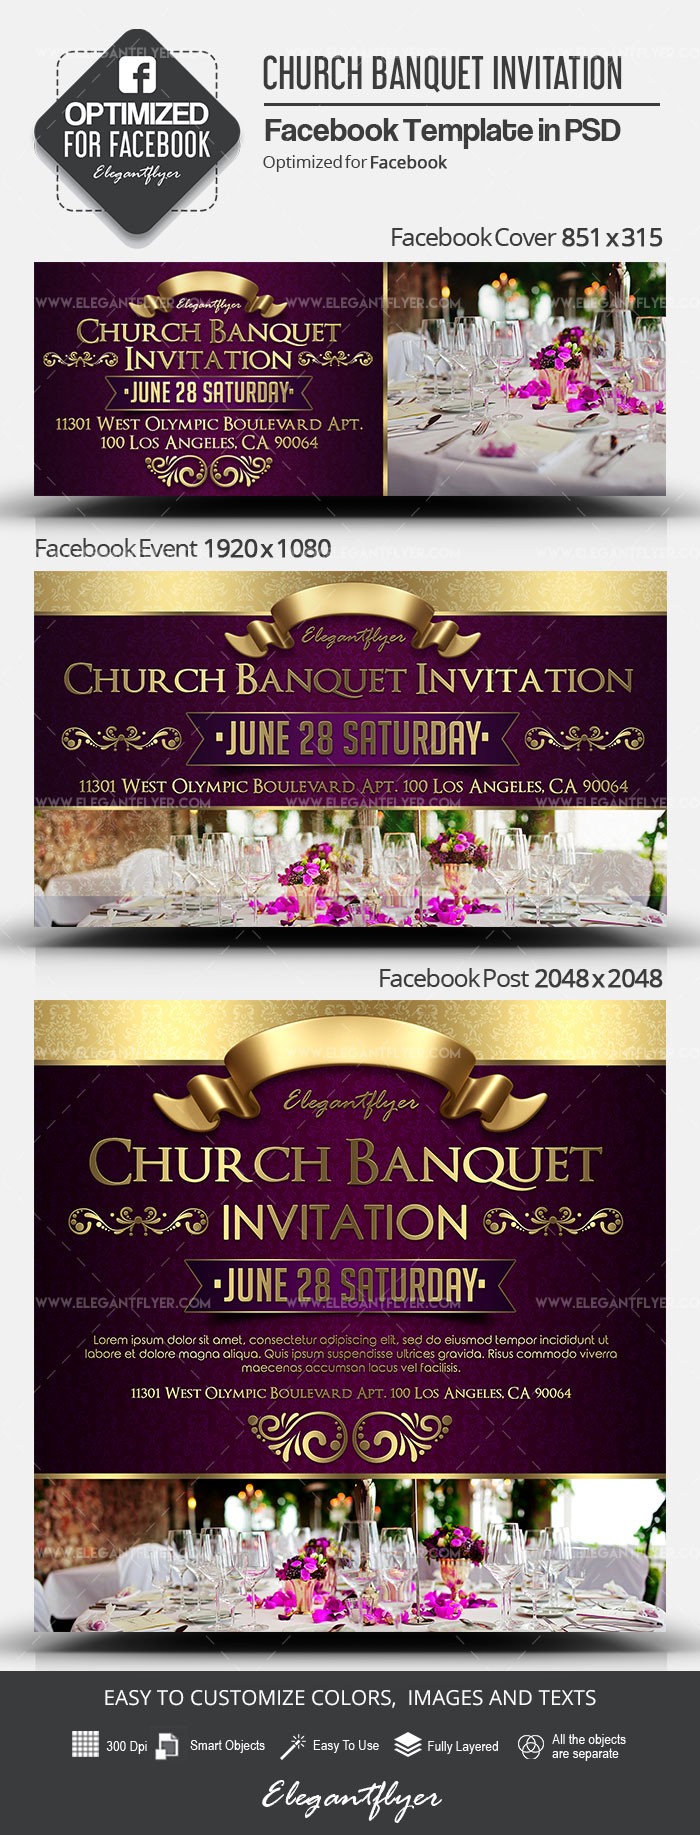 Invito a una cena di Chiesa su Facebook by ElegantFlyer